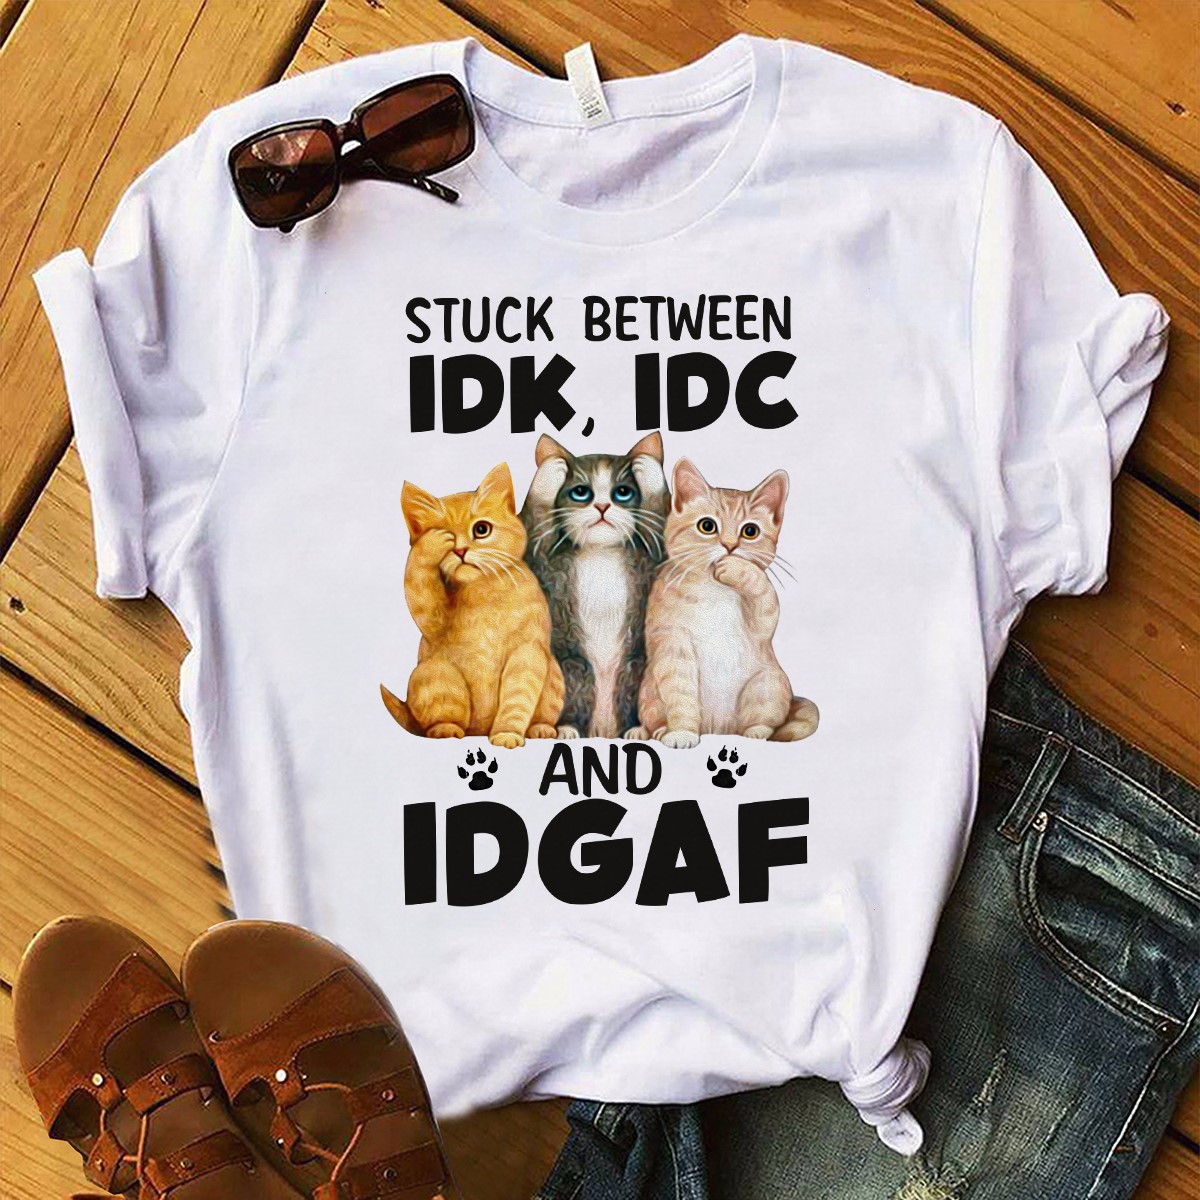 Stuck between IDK, IDC and IDGAF - 3 cats